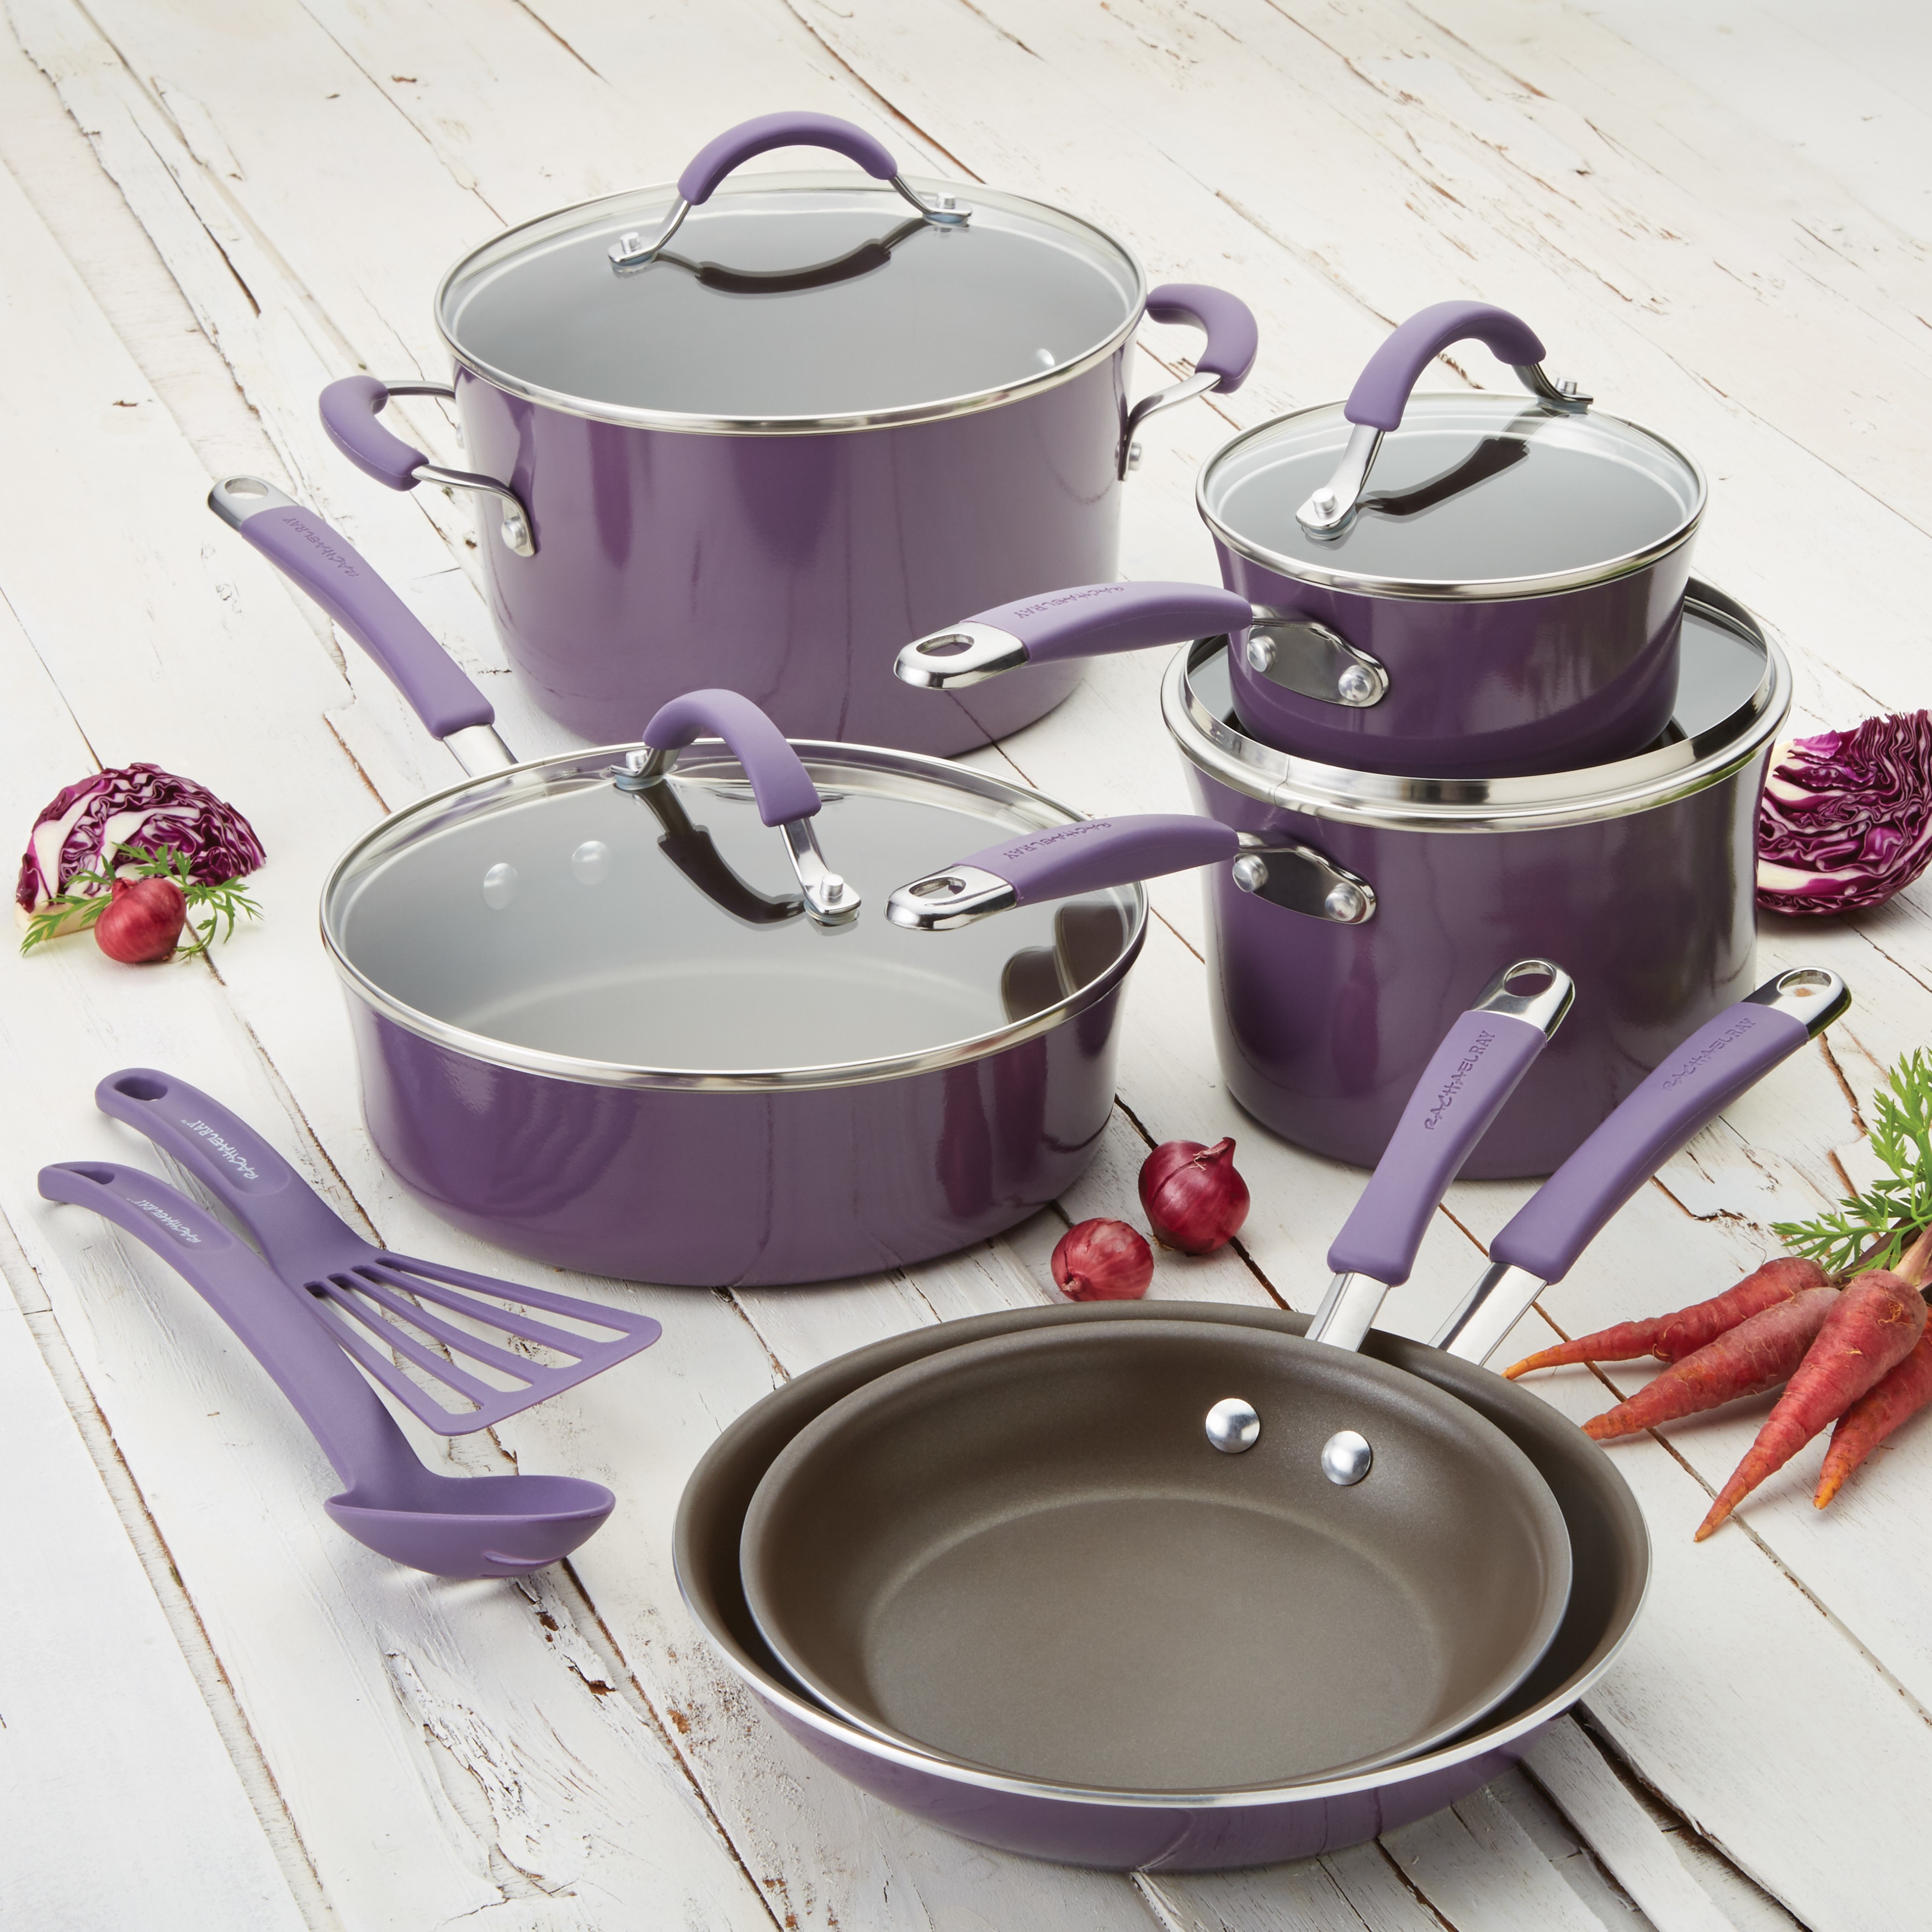 Rachael Ray Cucina Hard Porcelain Enamel Nonstick Cookware Pots and Pans  Set, 12-Piece, Lemongrass Green - Bed Bath & Beyond - 33581677